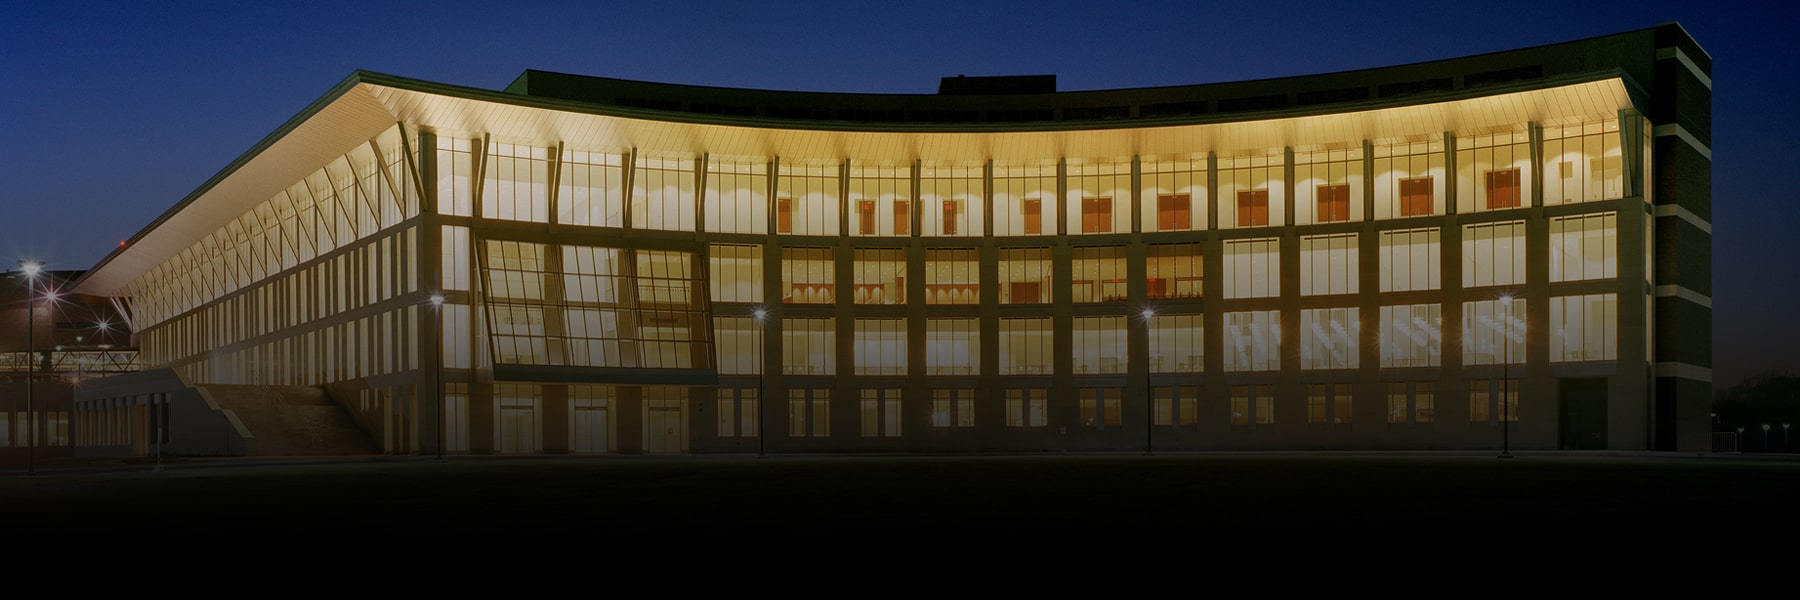 Campus Center illuminated at night